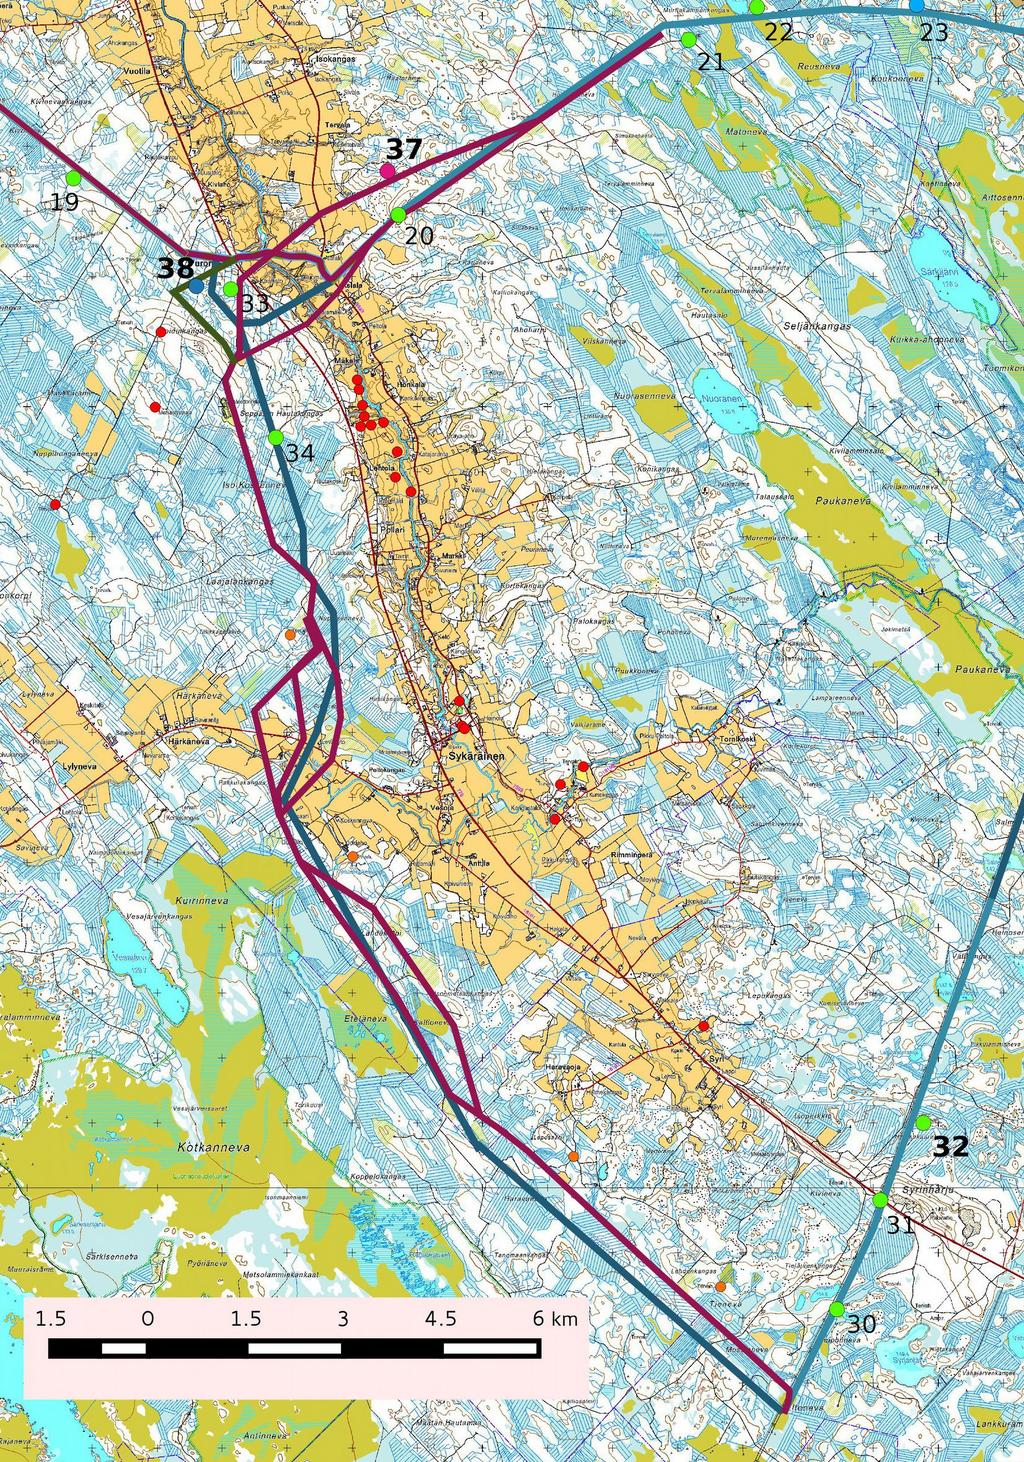 10 5. Yleiskartta 32 Kartta 3, Kokkola-Nivala voimalinja, keväällä 2014 inventoitu linjaus sinisenä, uudet linjausvaihtoehdot punaisena ja vihreänä.